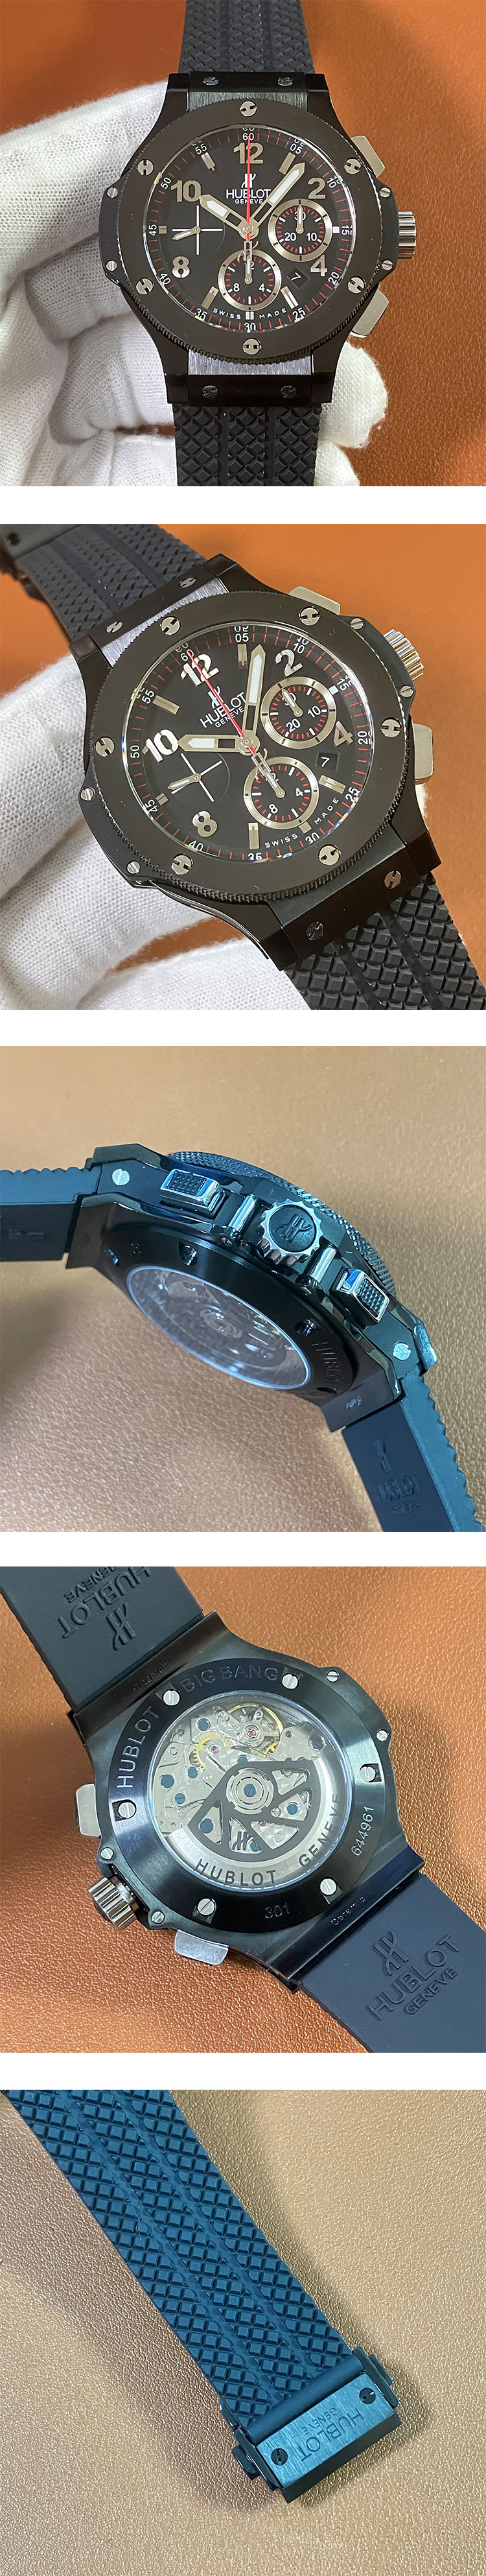 ウブロコピー時計 ビッグバン スチール セラミック301.SX.130.RX 時計はどうですか？